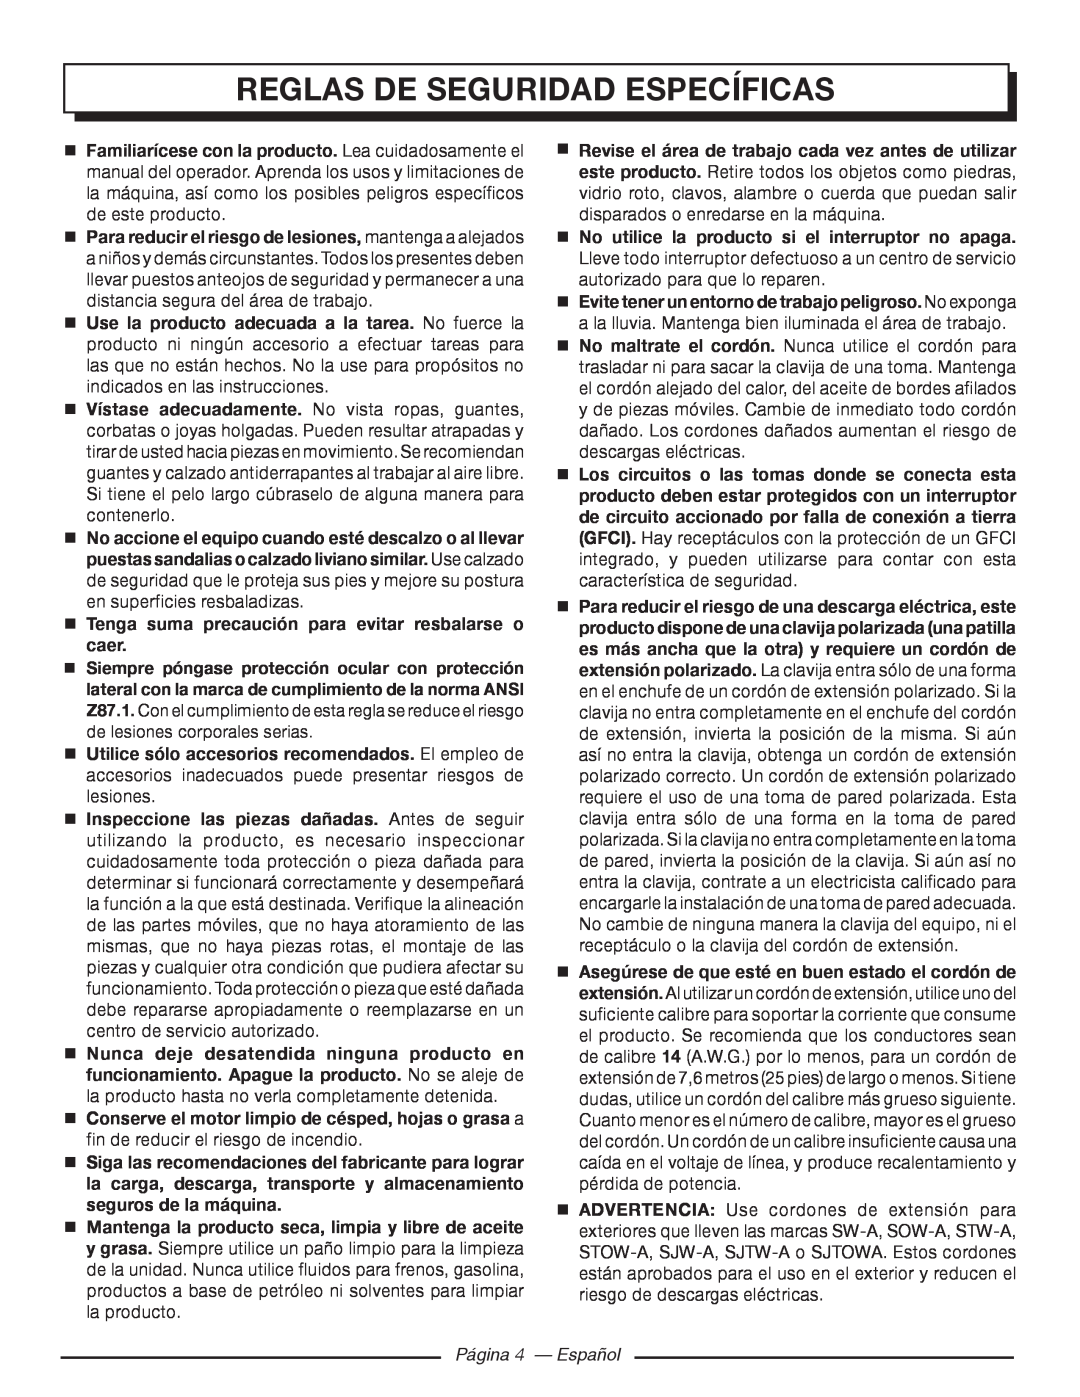 Homelite UT80720 manuel dutilisation Reglas De Seguridad Específicas, Página 4 - Español 